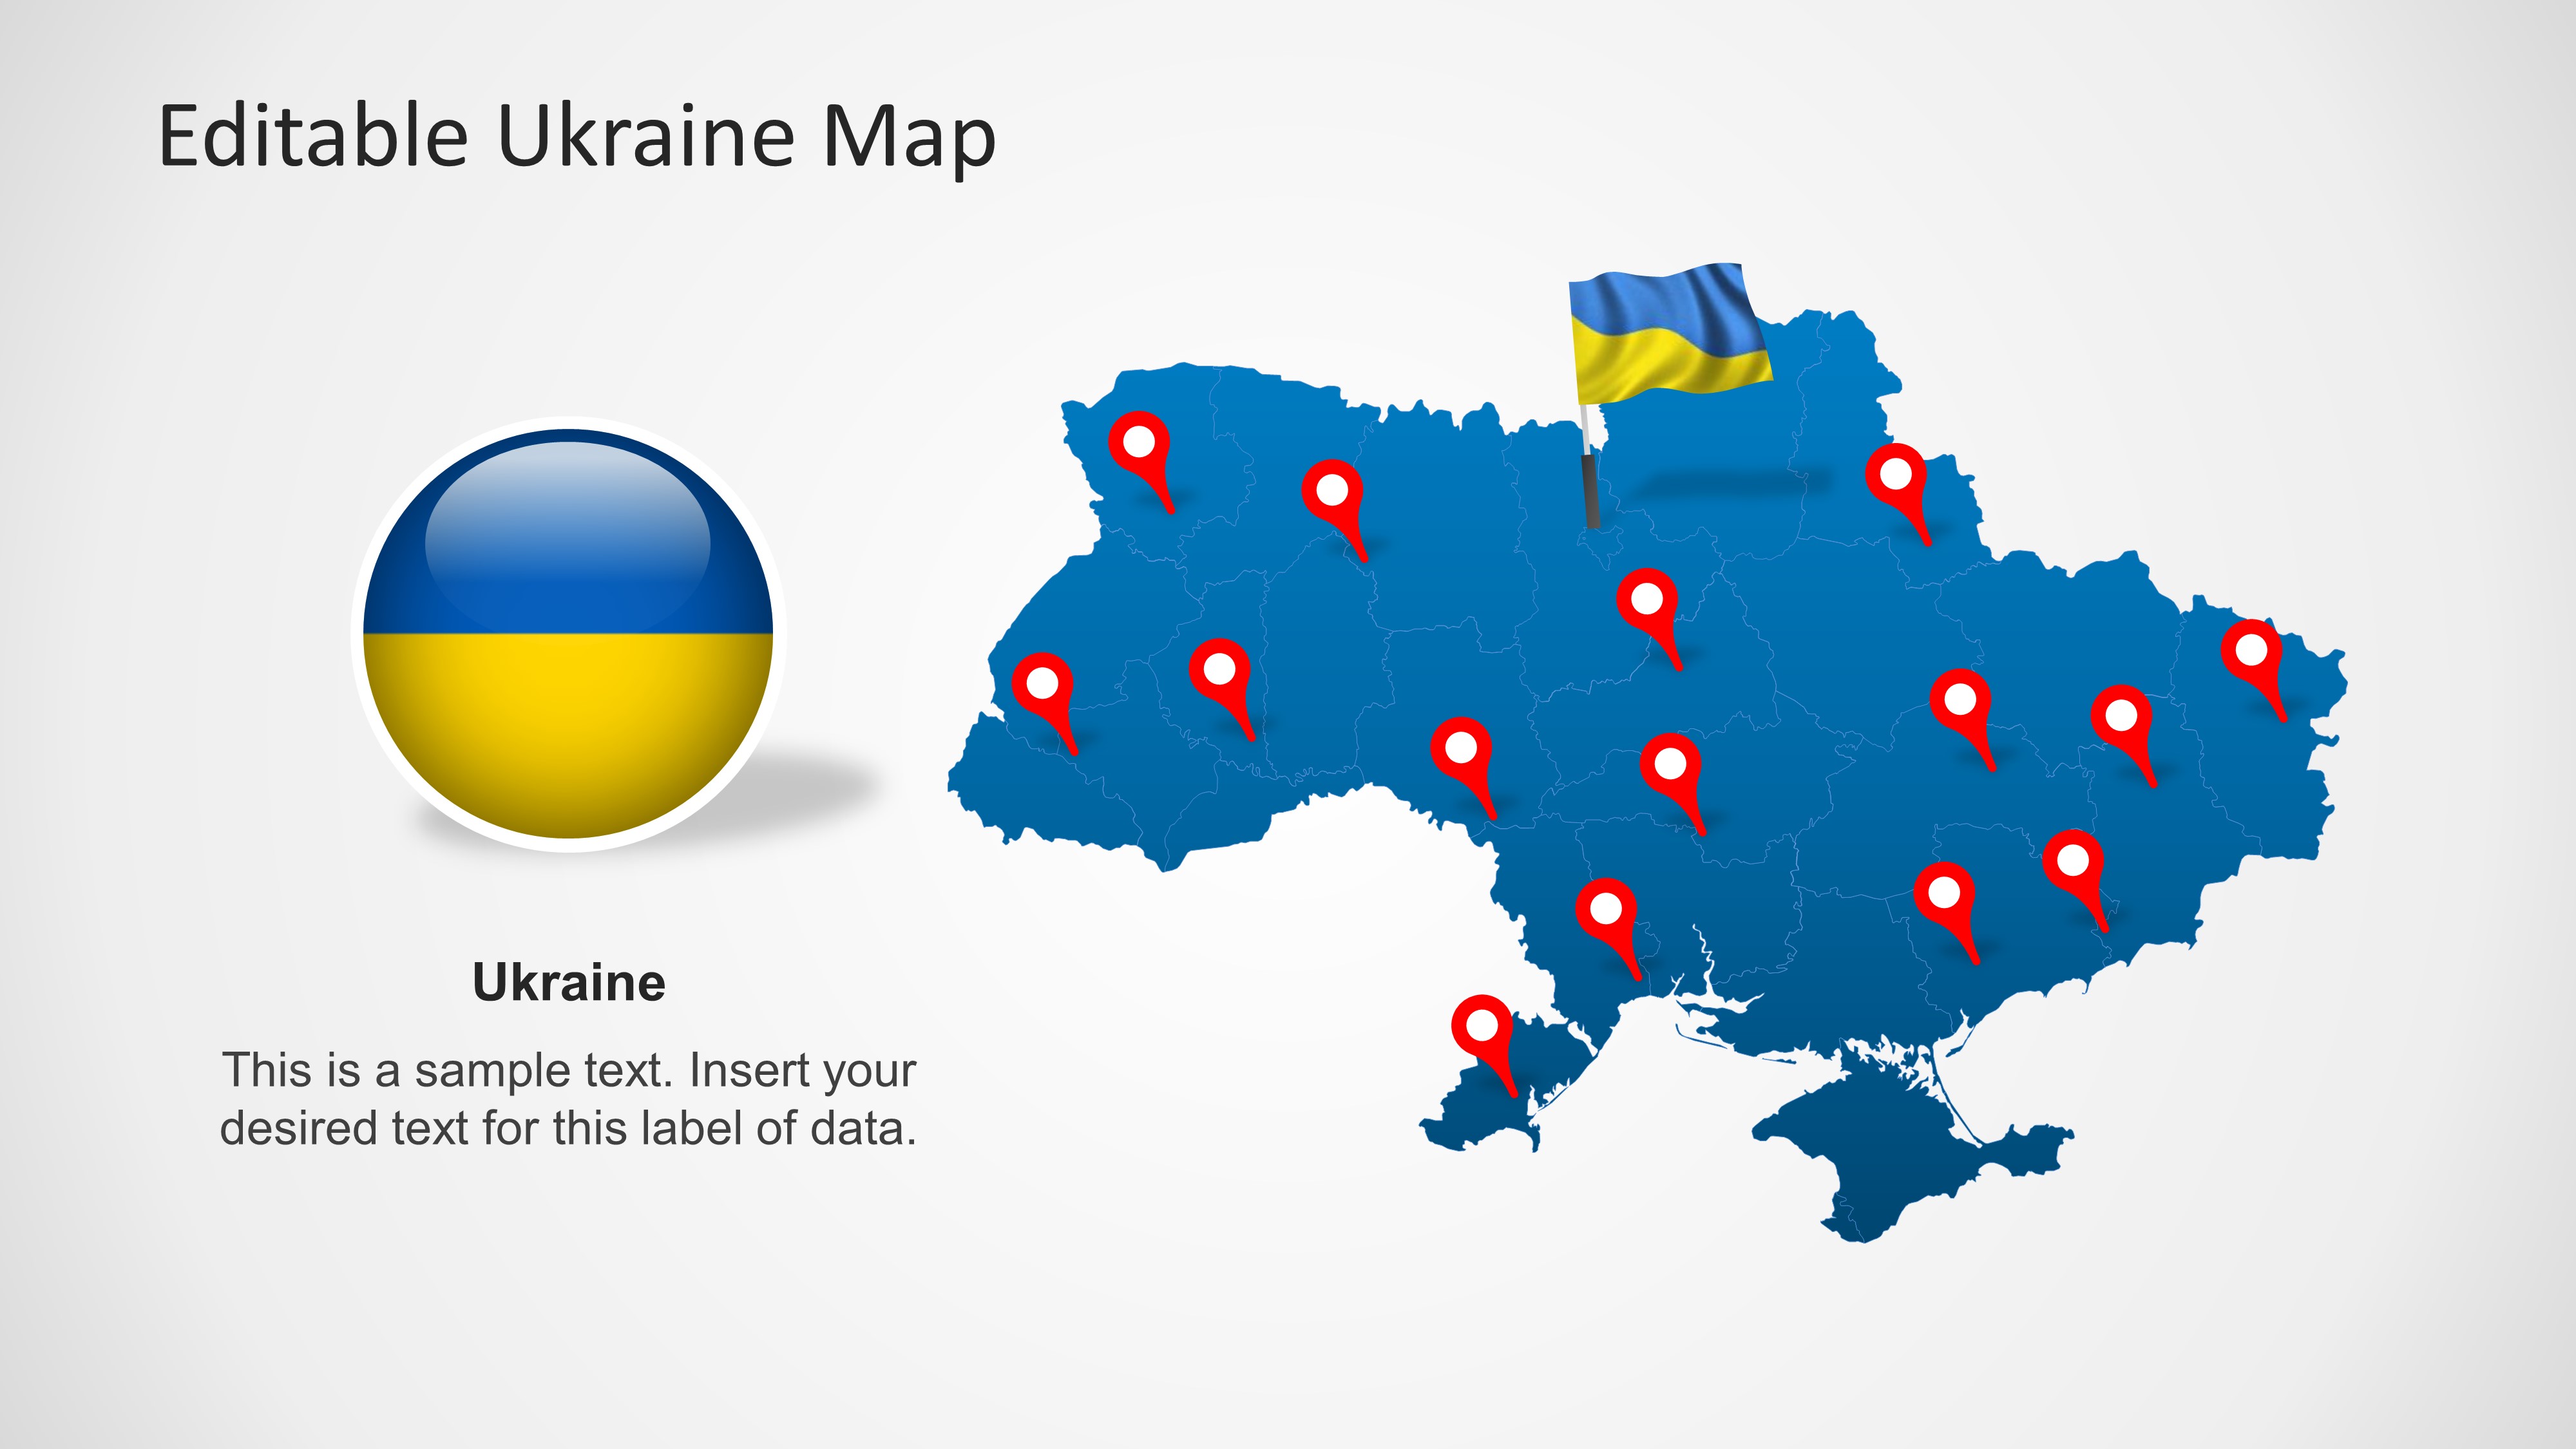 Bạn muốn tăng cường bài thuyết trình về Ukraine của mình bằng một bản đồ đẹp? Không cần tìm kiếm nhiều, vì chúng tôi có một bản đồ Ukraine cho PowerPoint đẹp mắt và hoàn toàn miễn phí cho bạn. Với định dạng hoàn hảo, bạn sẽ có thể giới thiệu thông tin về Ukraine một cách nhanh chóng và hiệu quả.